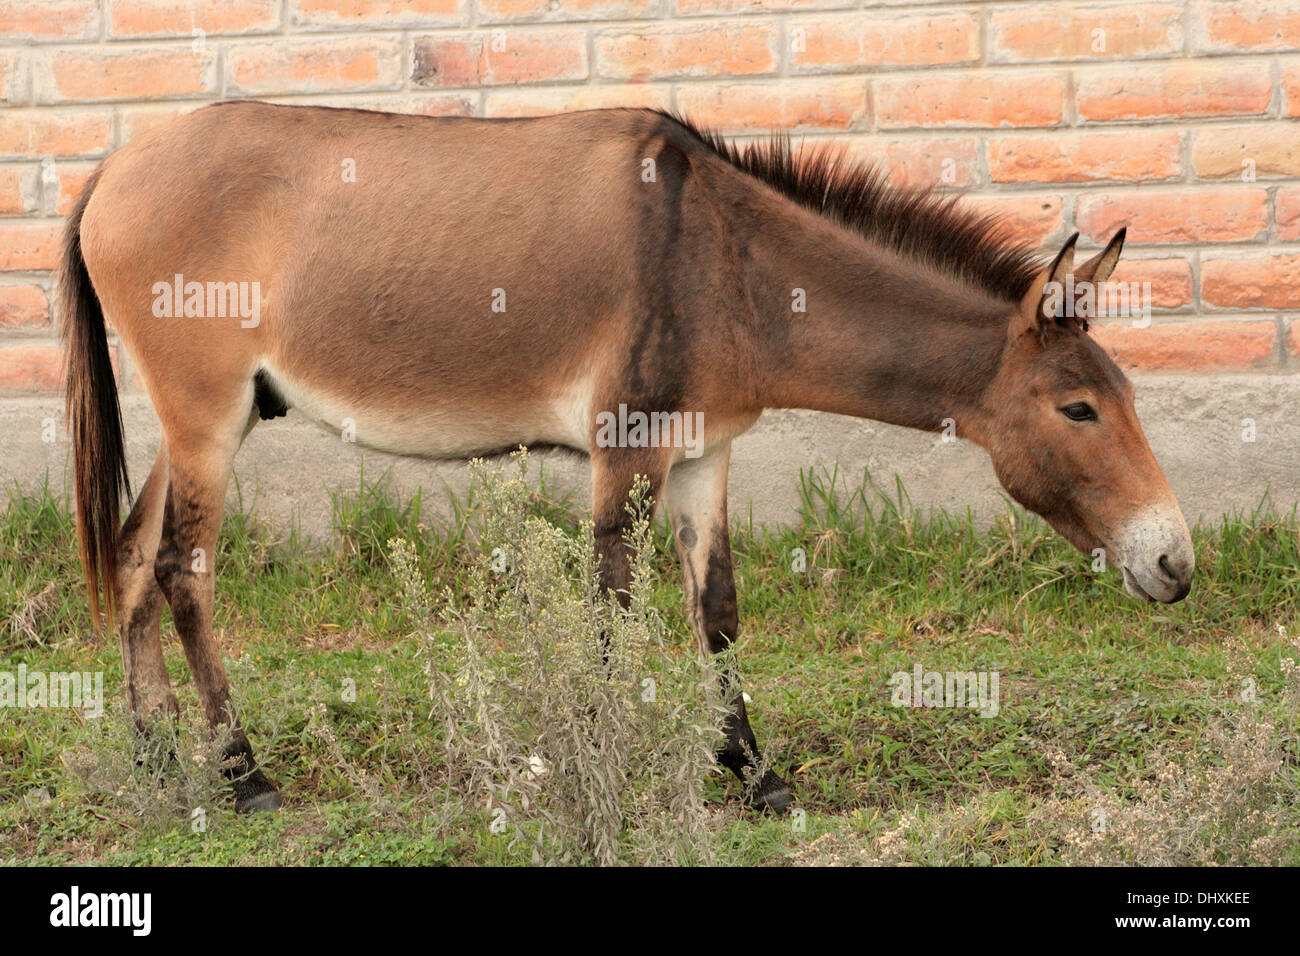 A brown mule in a farmers pasture in Cotacachi, Ecuador Stock Photo